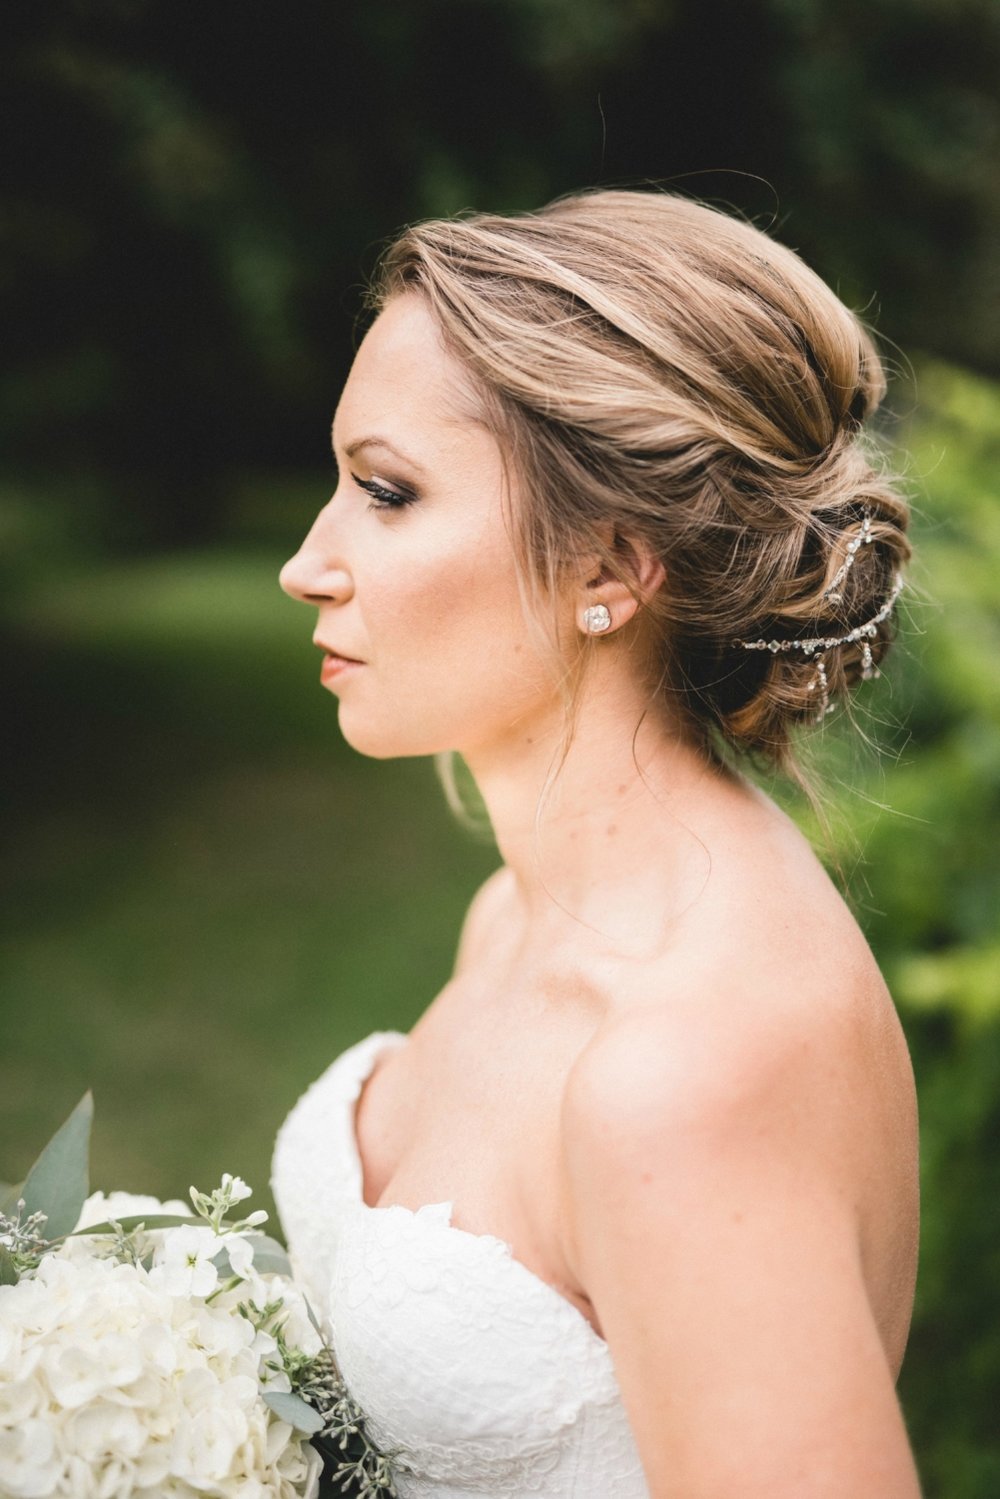 — Fourteenth: Bridal Hair Trials